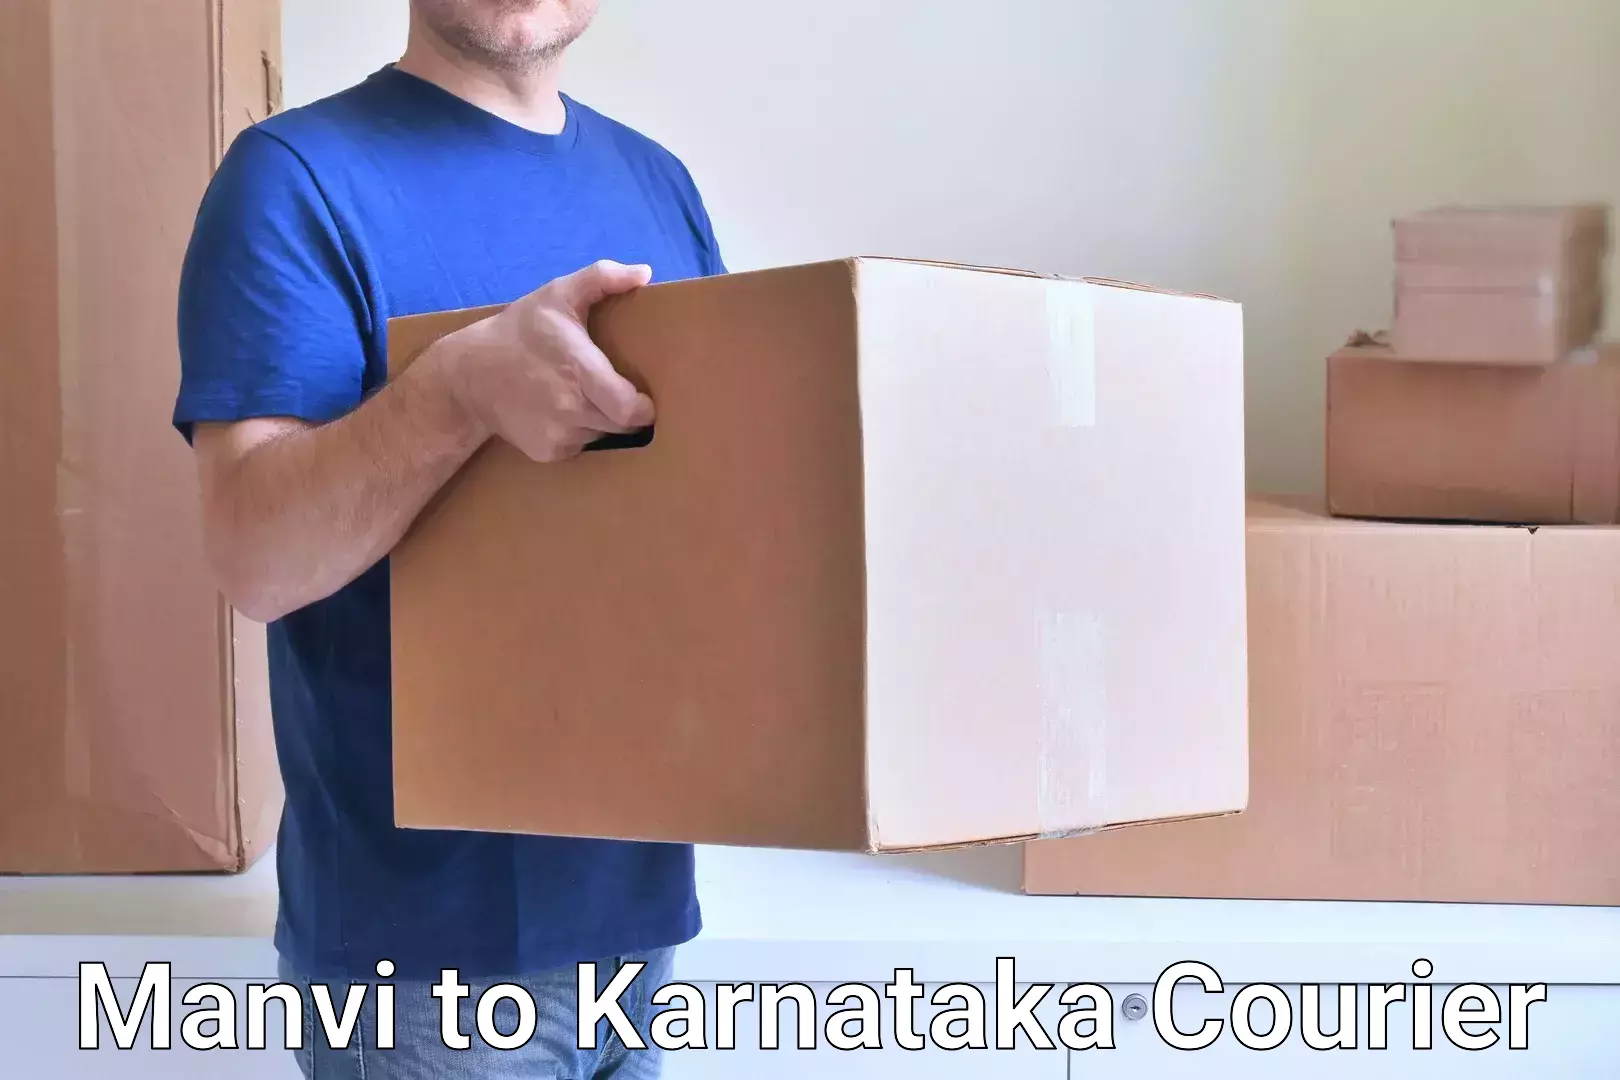 Lightweight courier Manvi to Karnataka